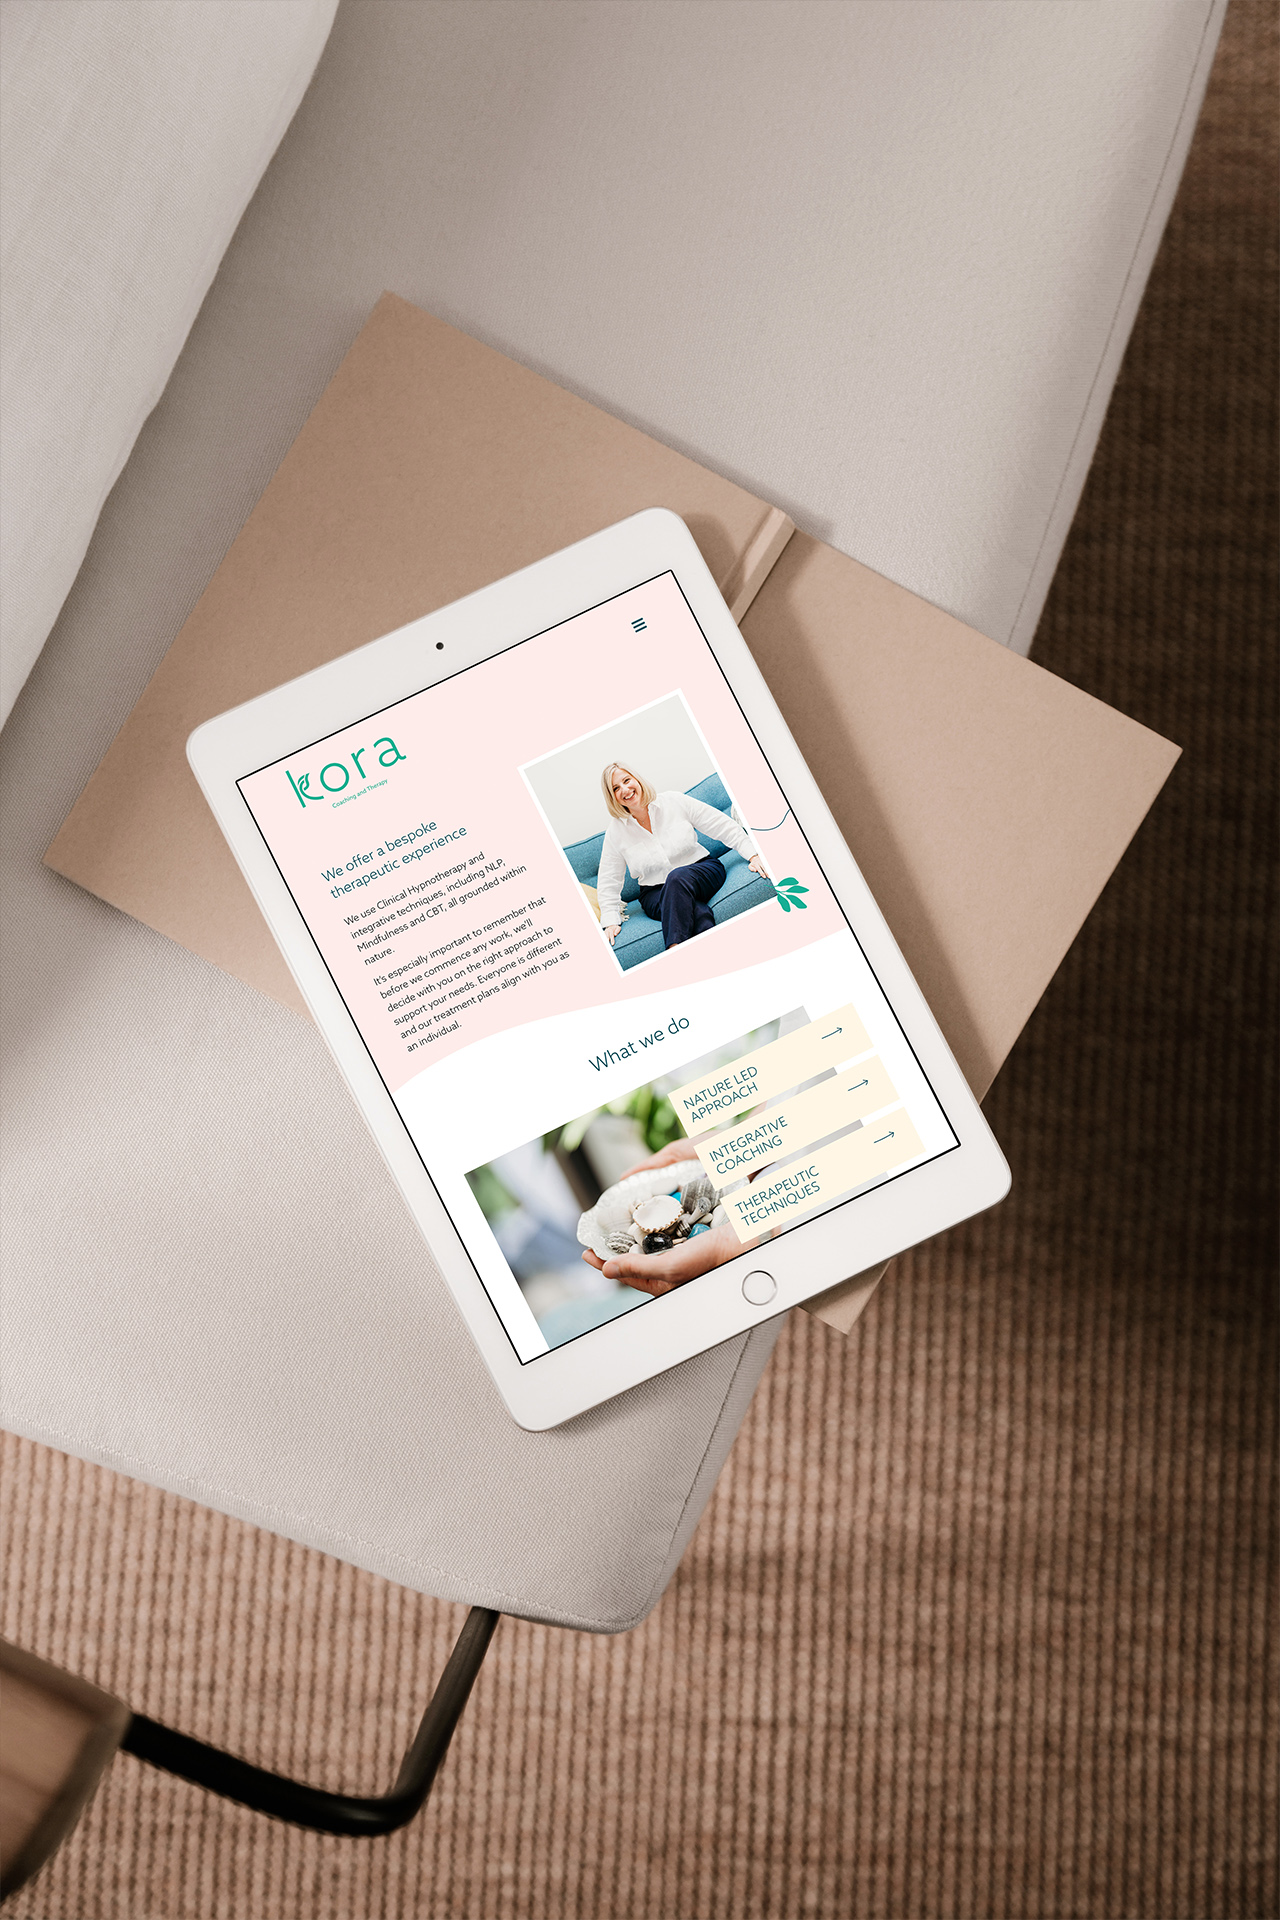 Kora Website design - subpage on iPad sitting on sofa